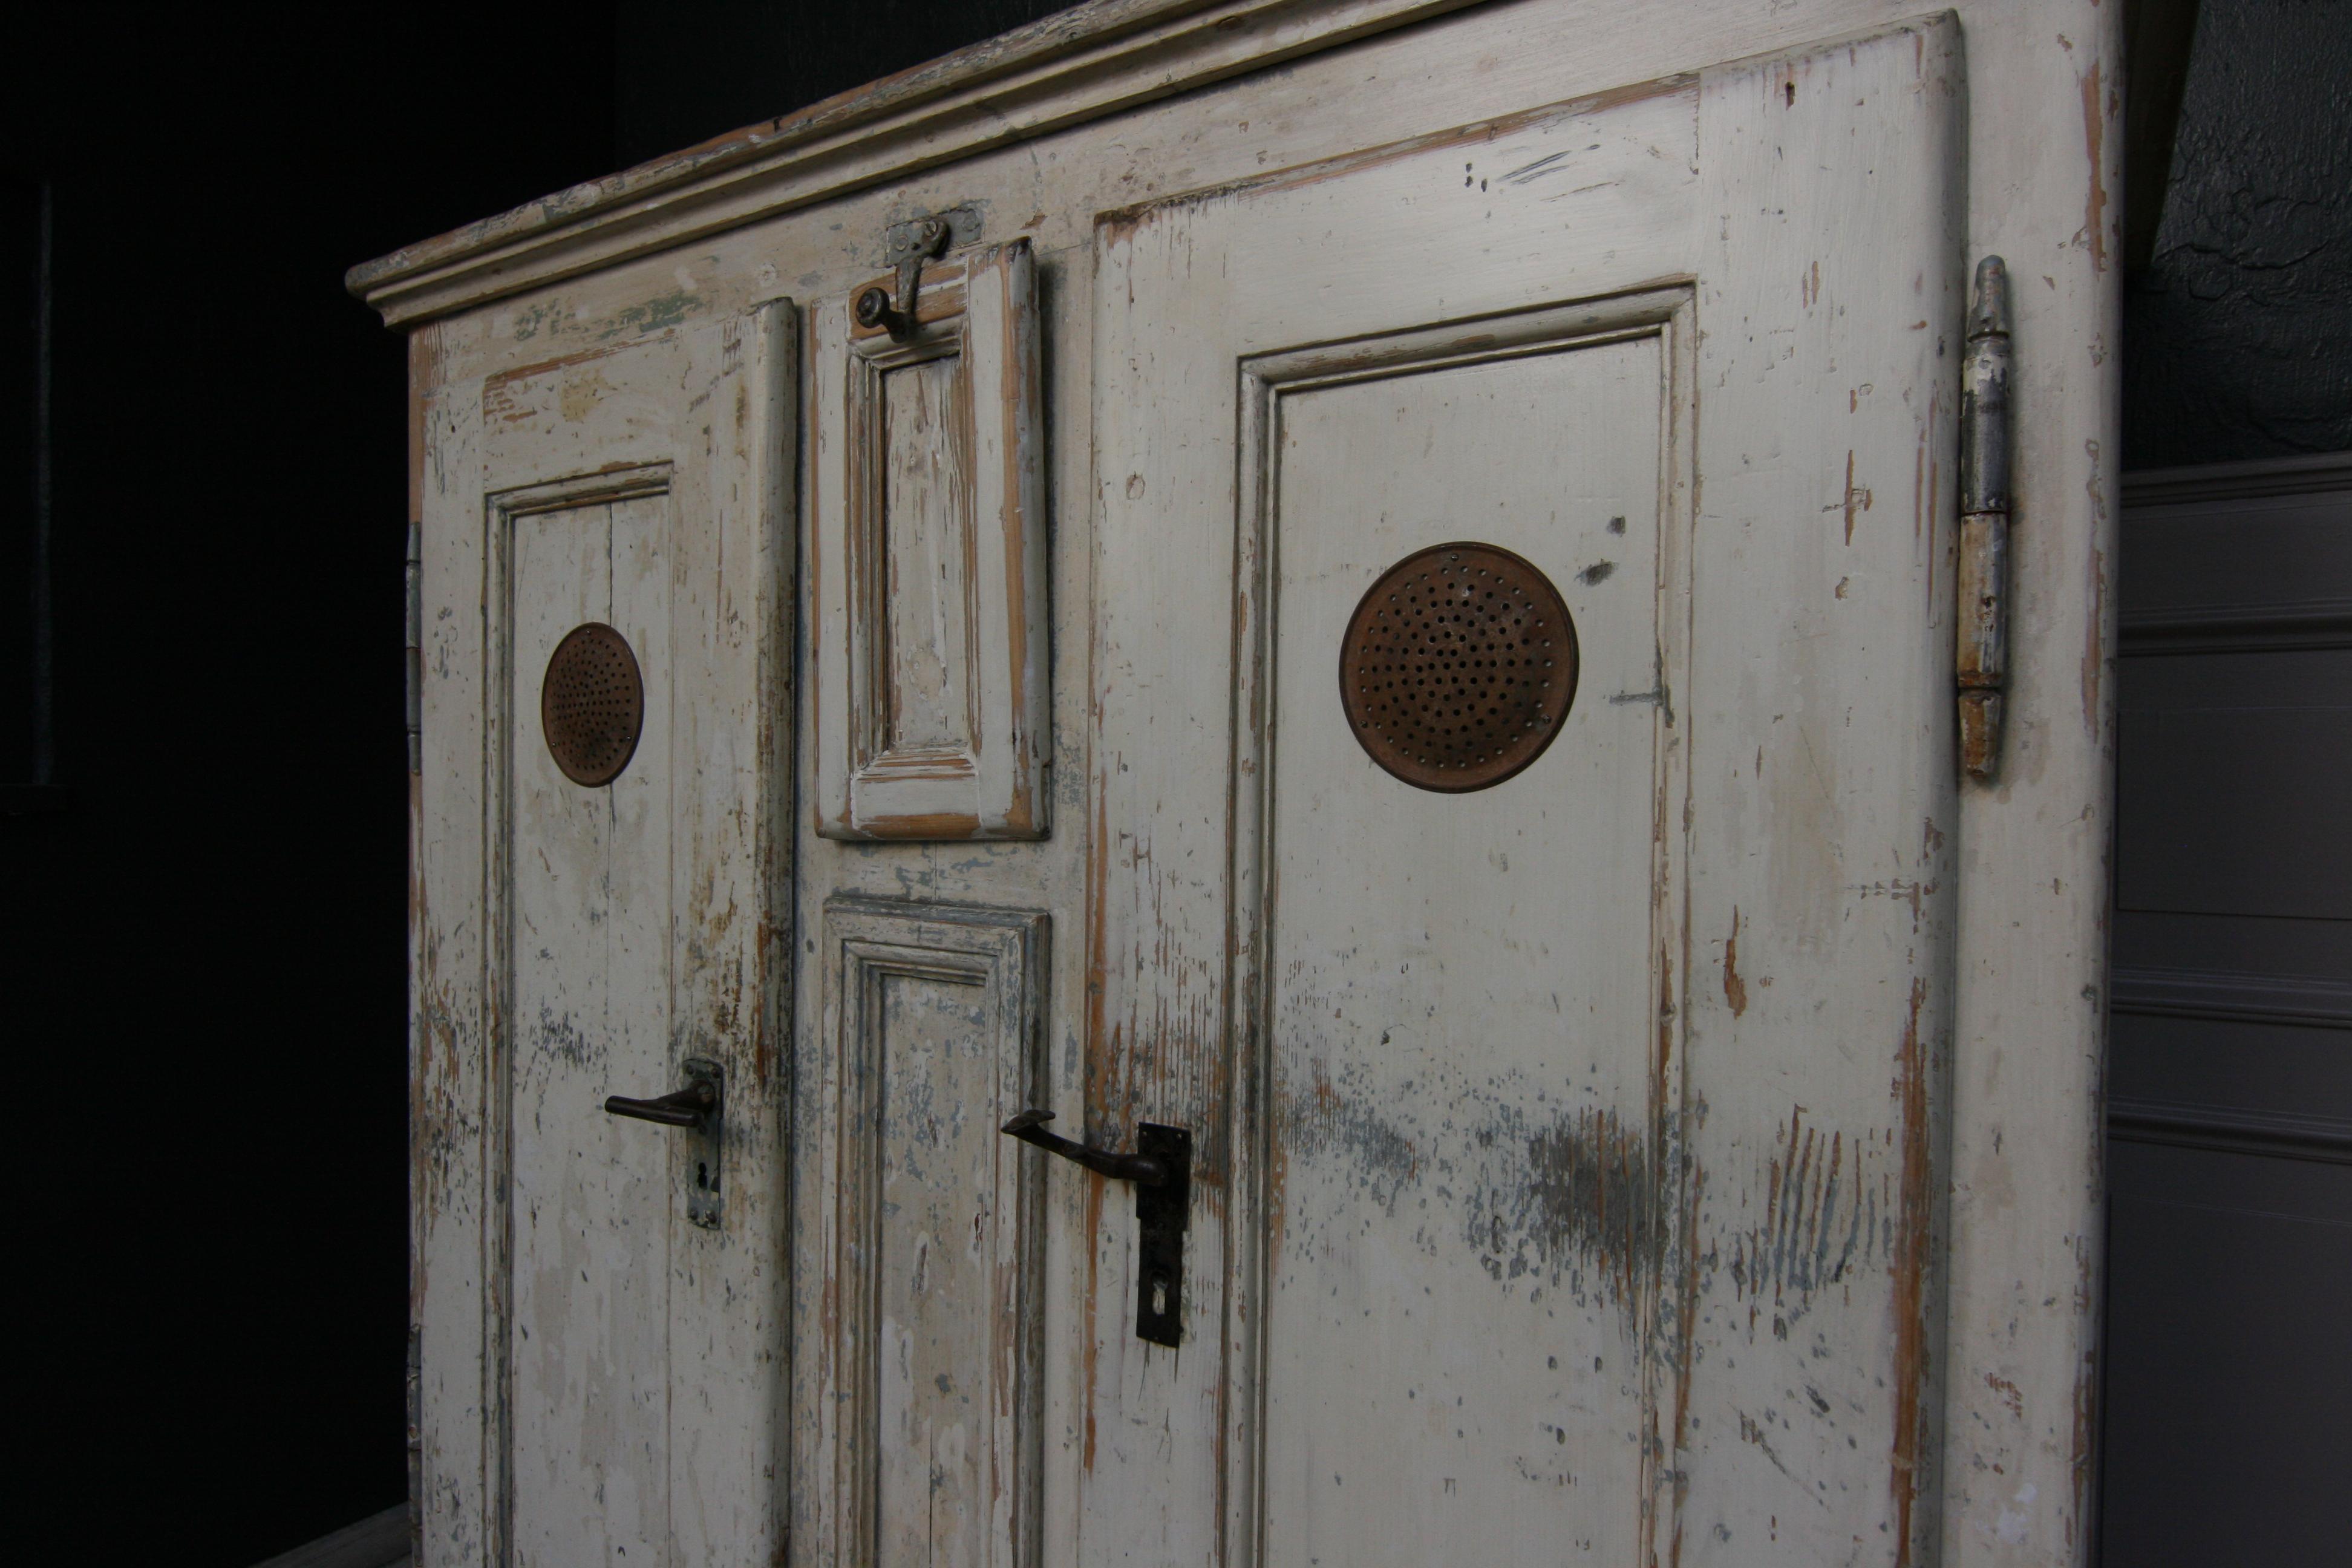 19th Century Refrigerator or Ice Box Cabinet in Original Cream Paint 1